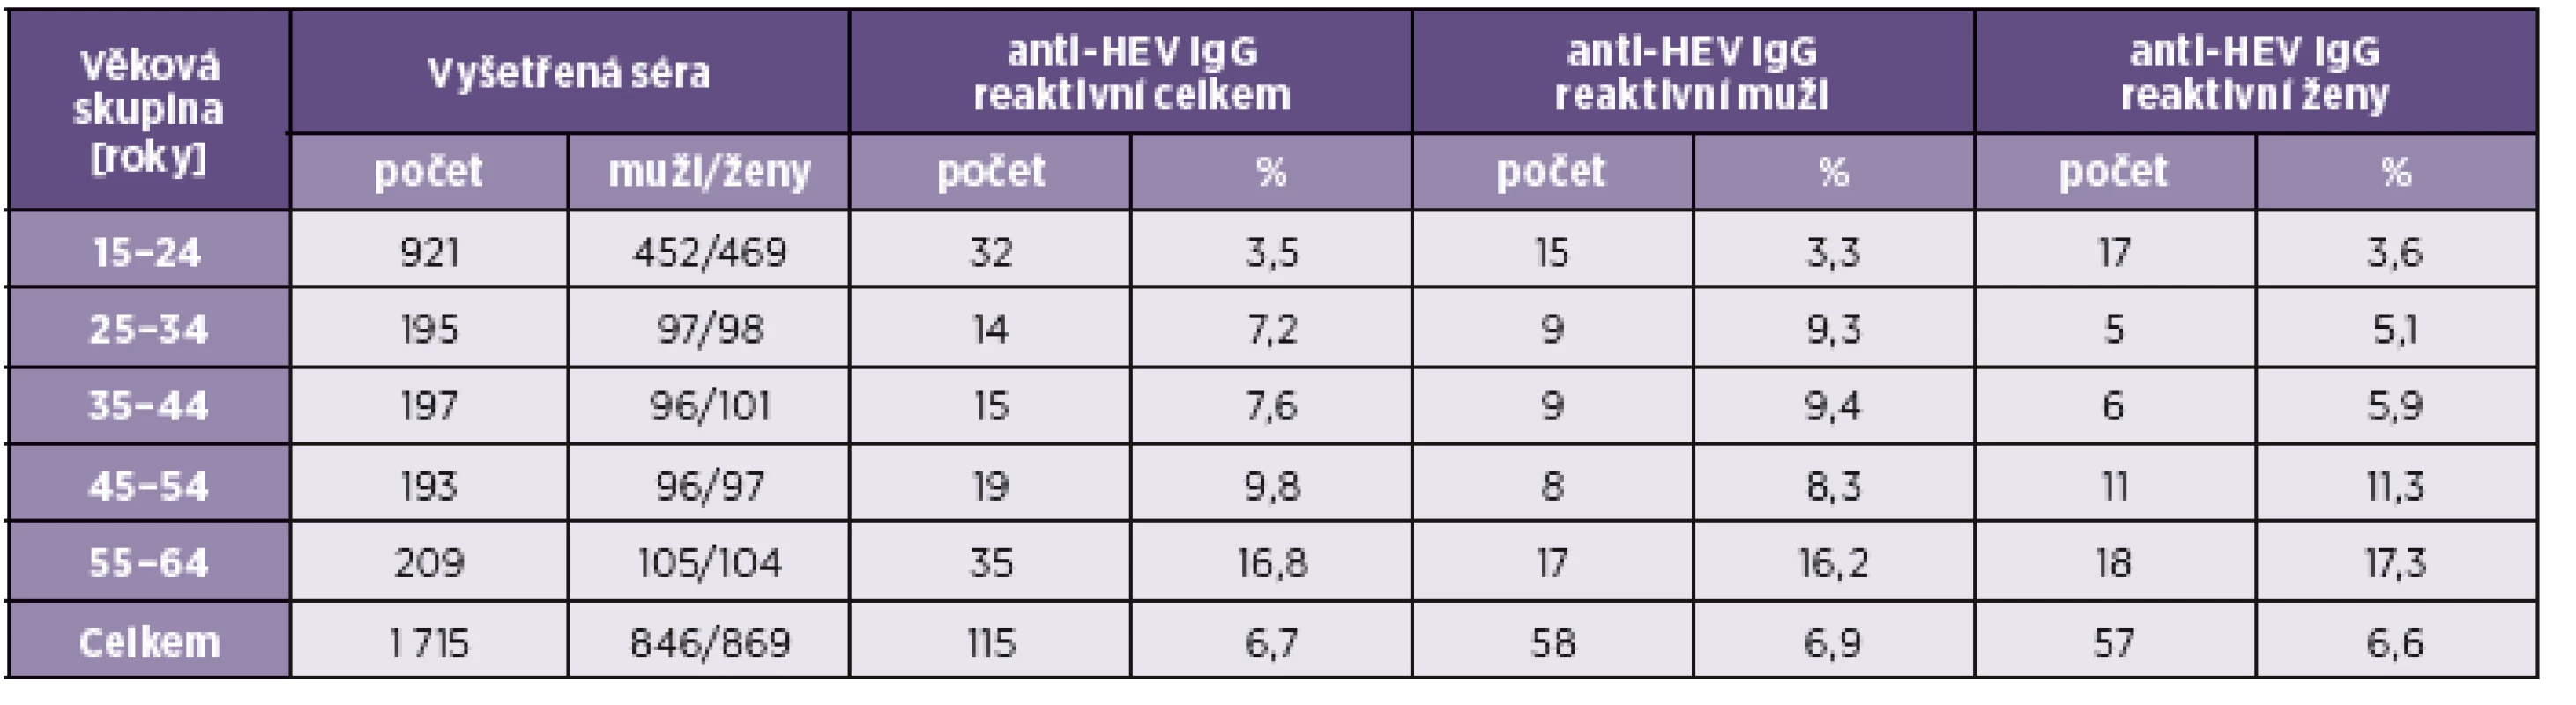 Prevalence protilátek anti-HEV IgG v sérech ze sérologického přehledu 2001
Table 1. The prevalence of anti-HEV IgG antibodies in sera from the 2001 serological survey